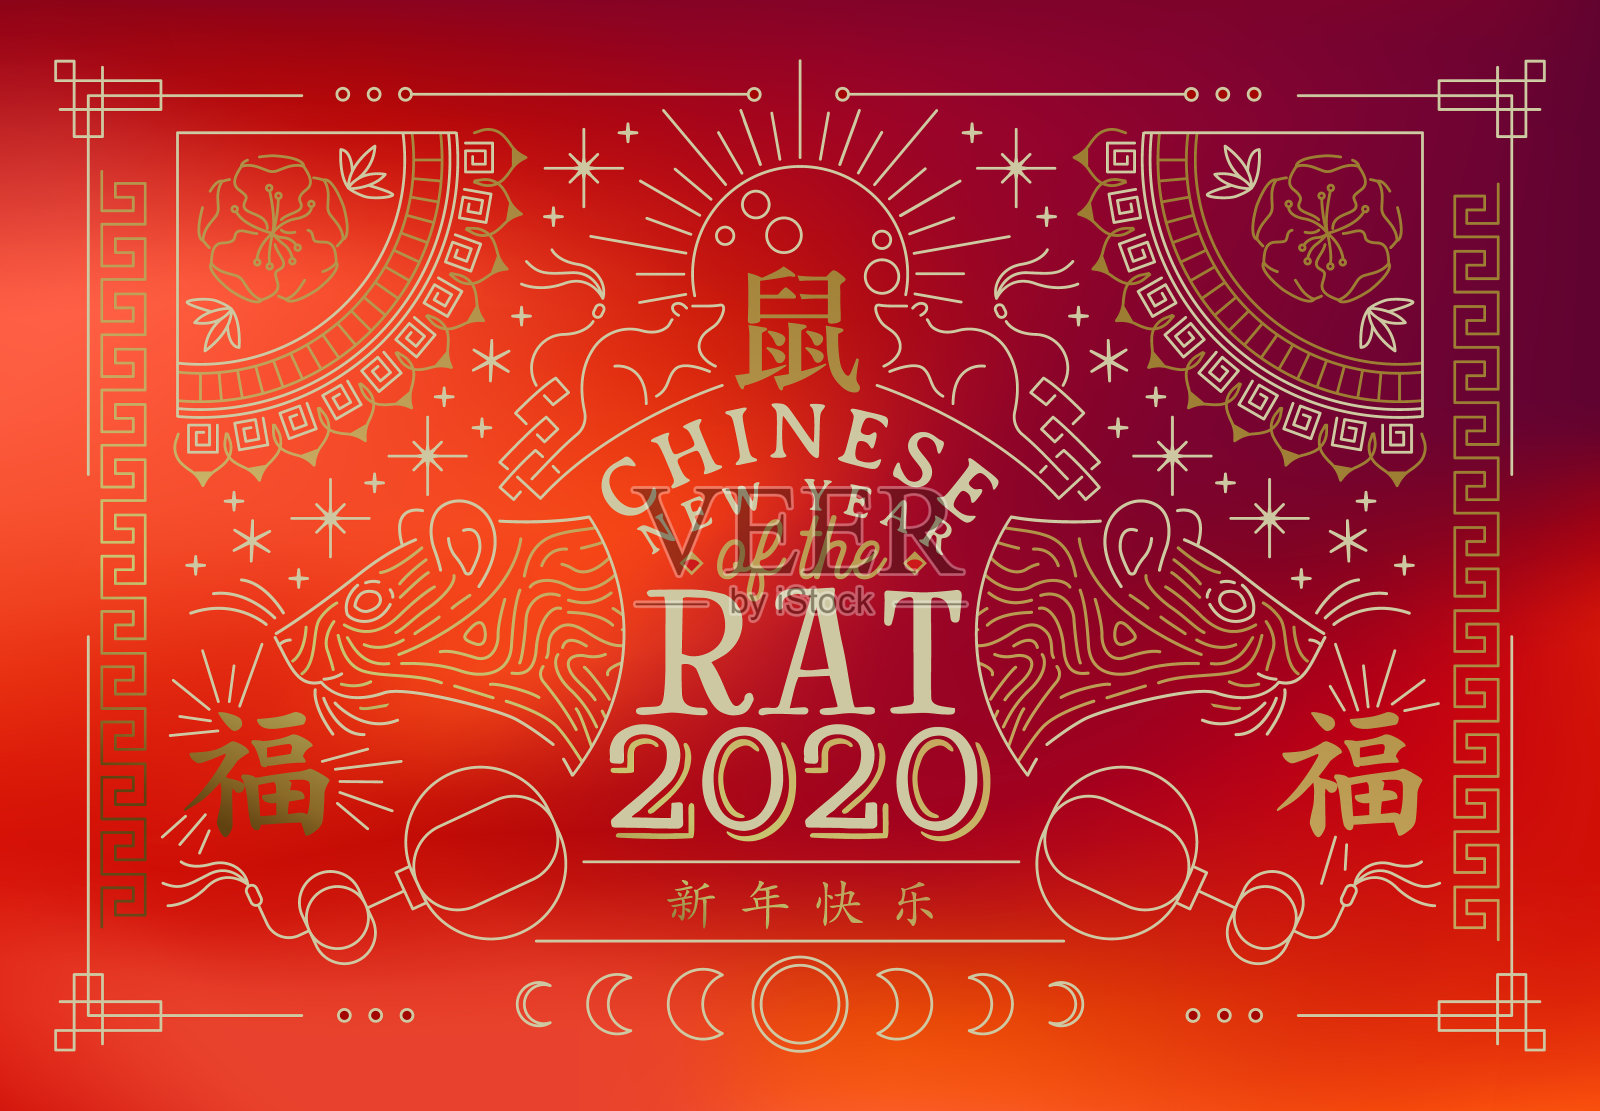 中国新年老鼠2020红卡金线艺术设计模板素材